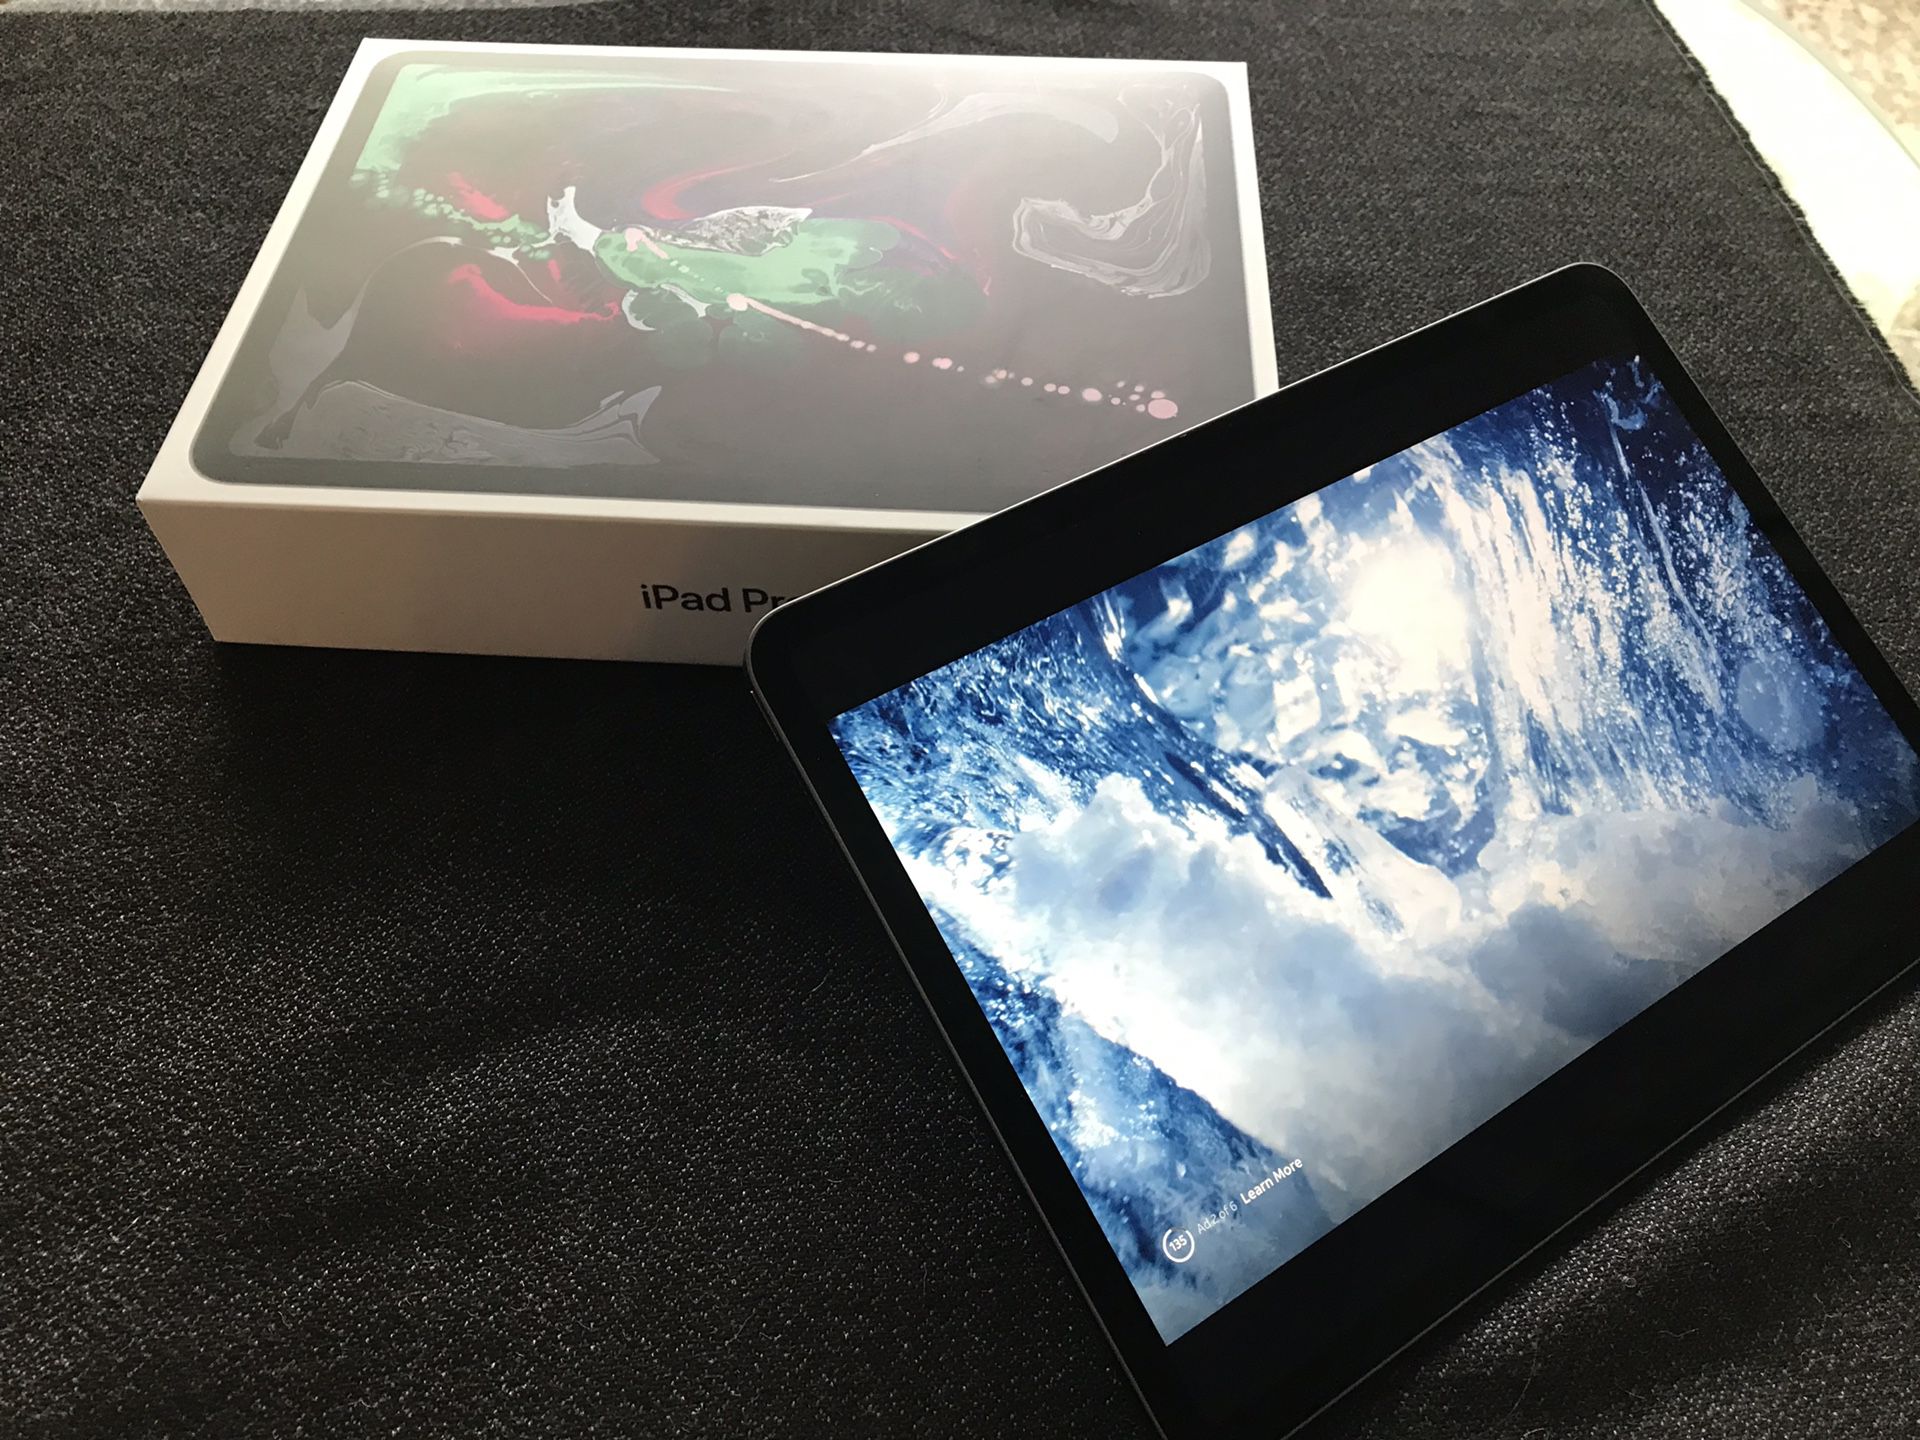 iPad Pro 11’ like bran new